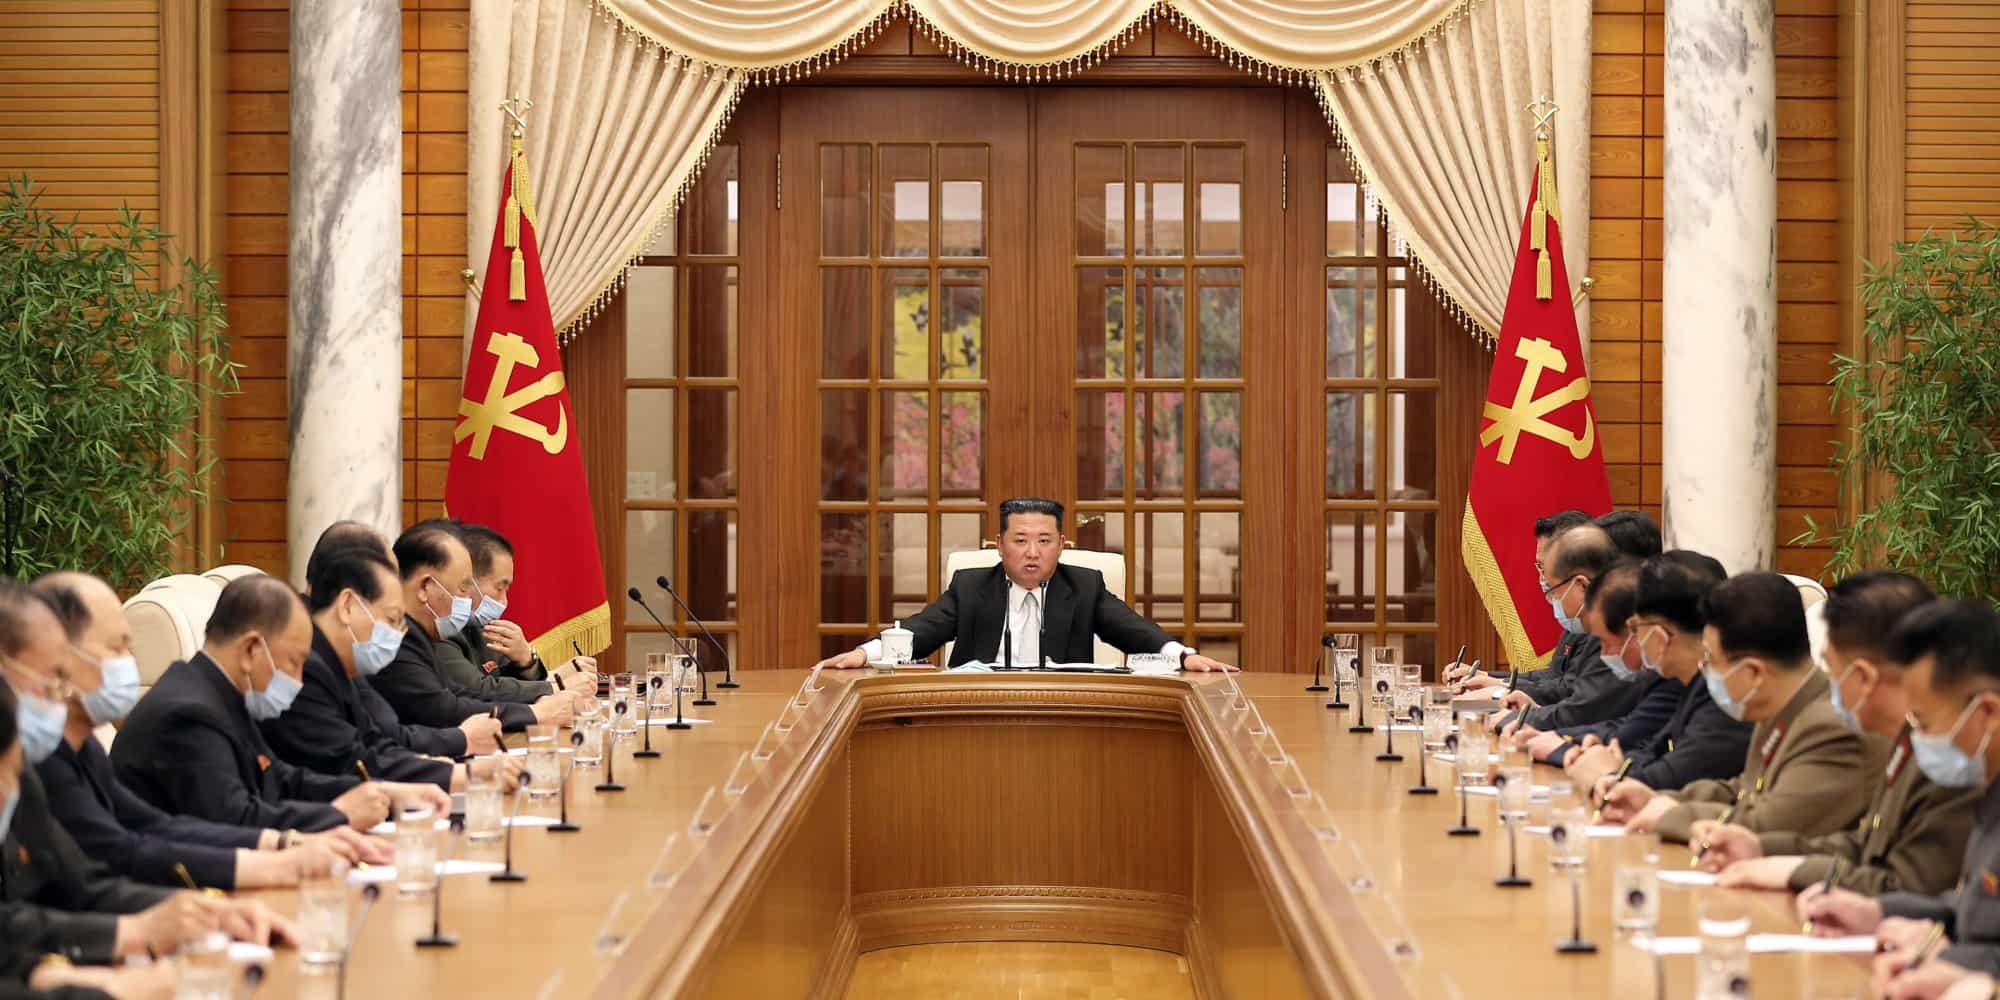 Ο πρόεδρος της Βόρειας Κορέας Κιμ Γιονγκ Ουν